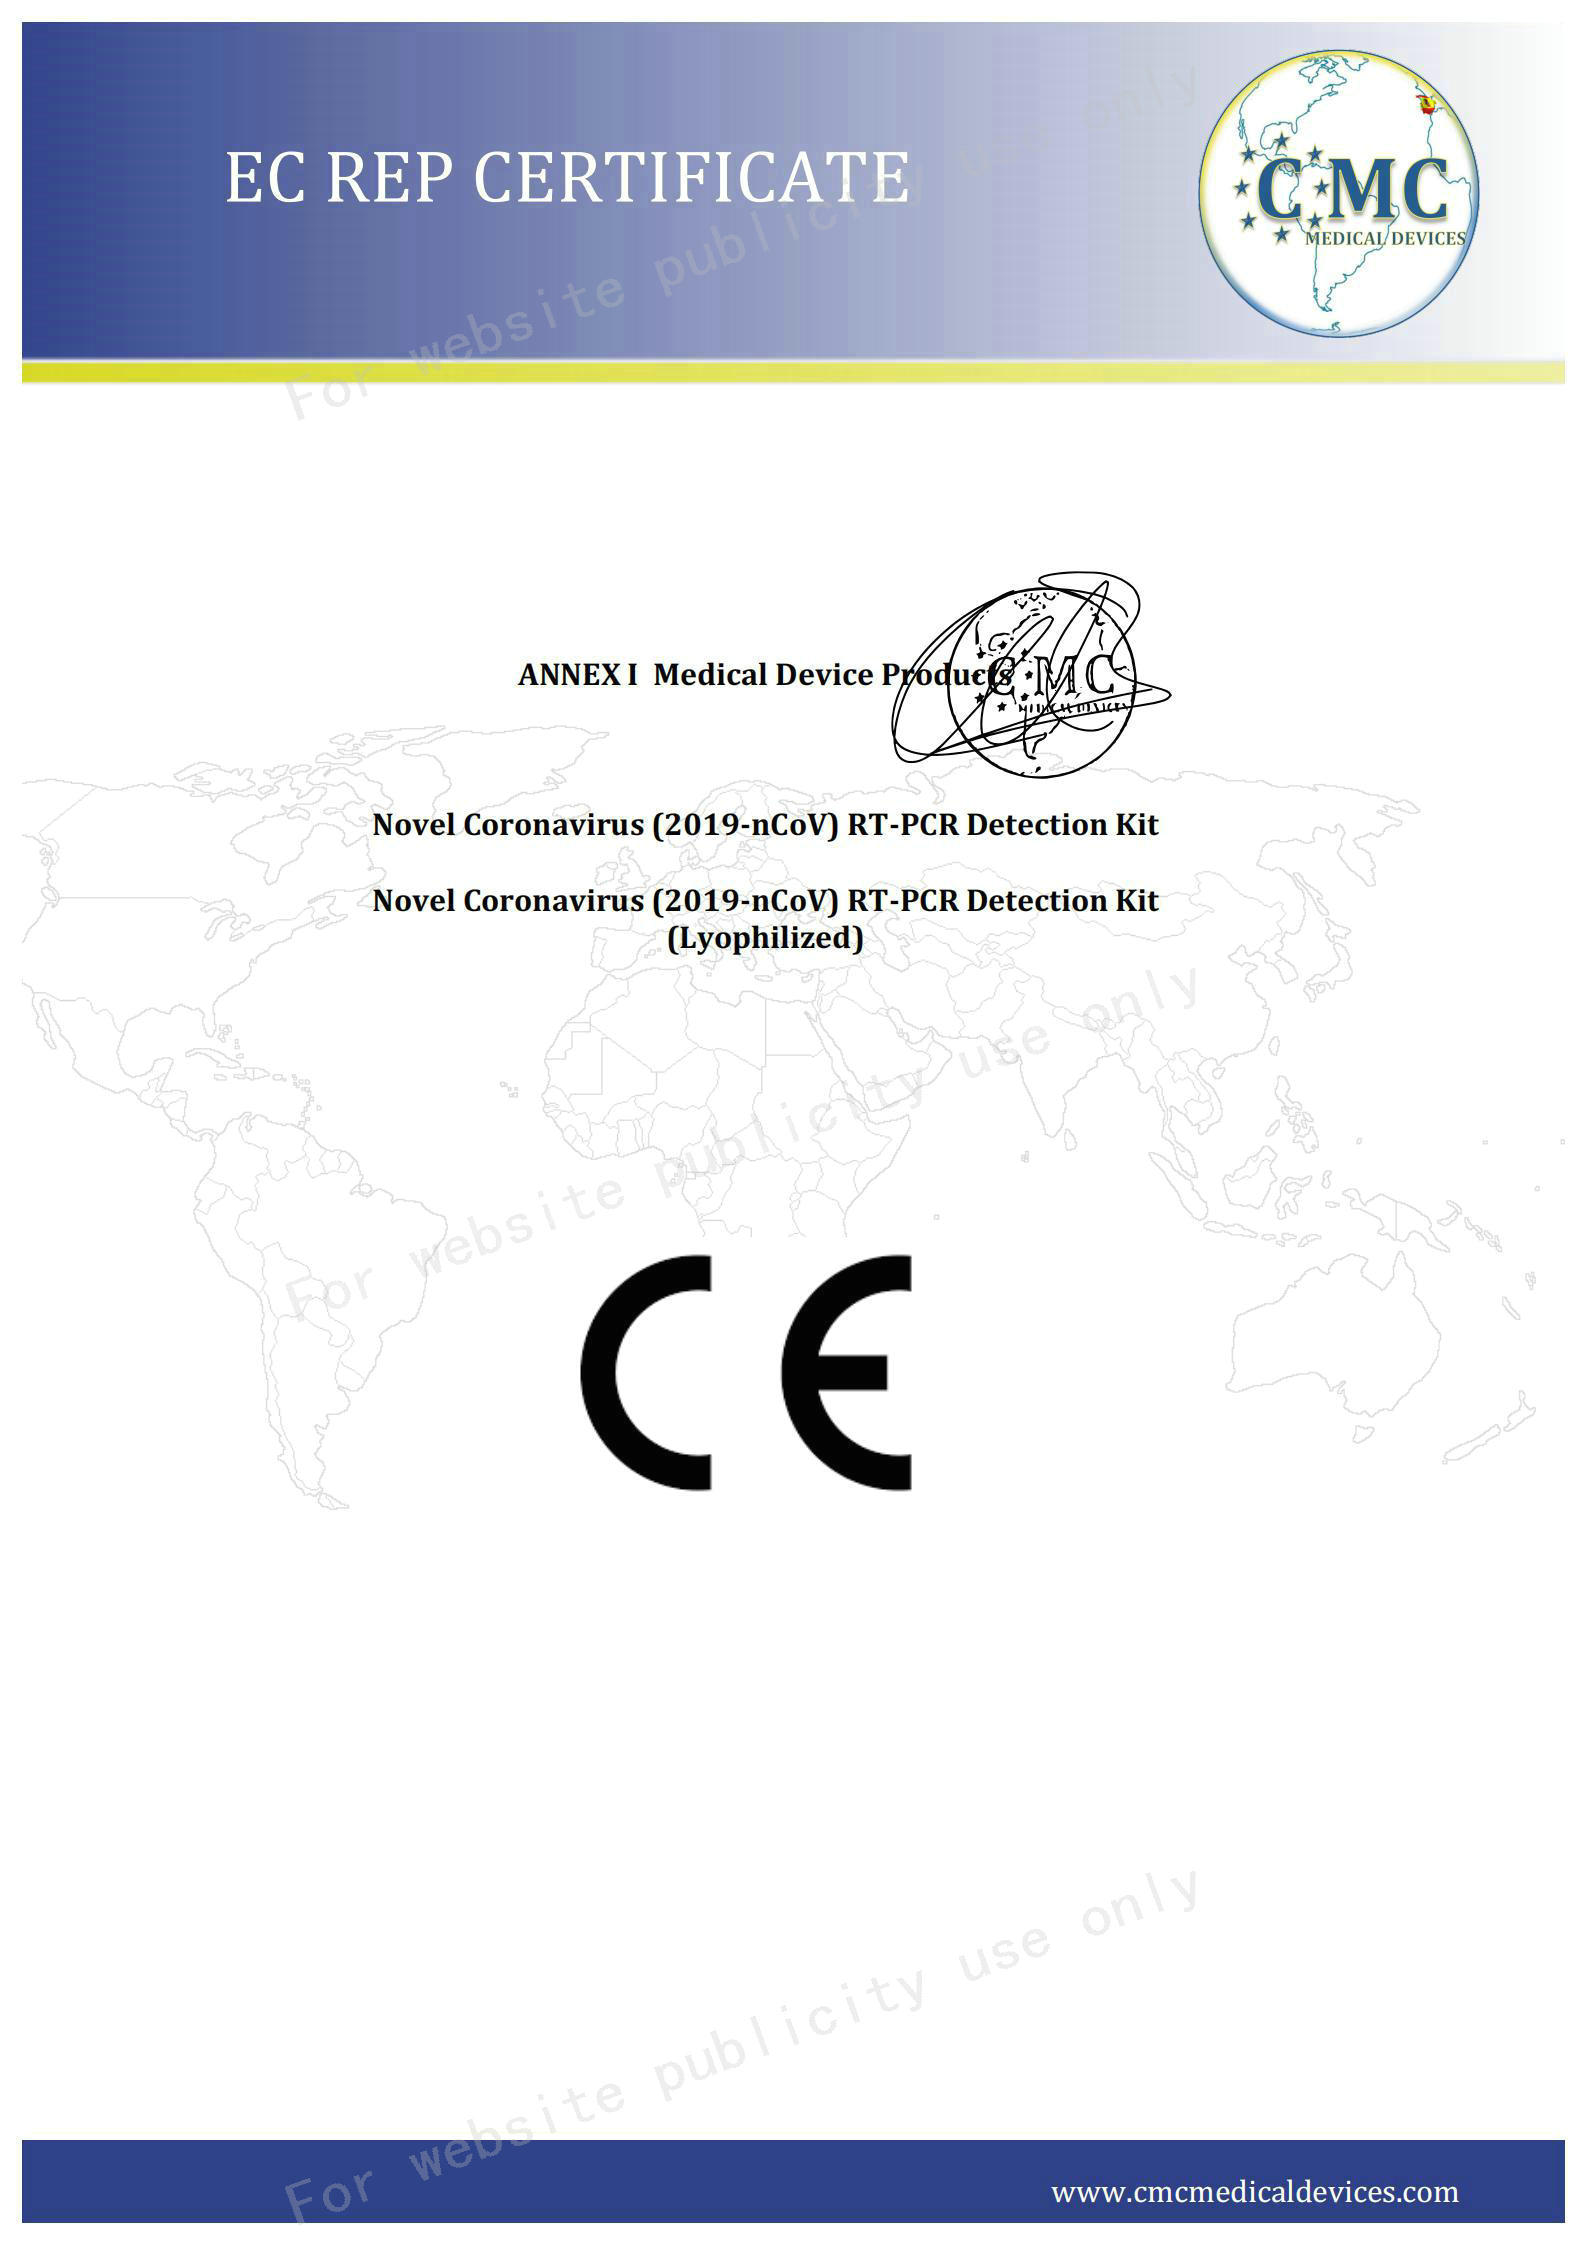 02 CE certifikát strana 2